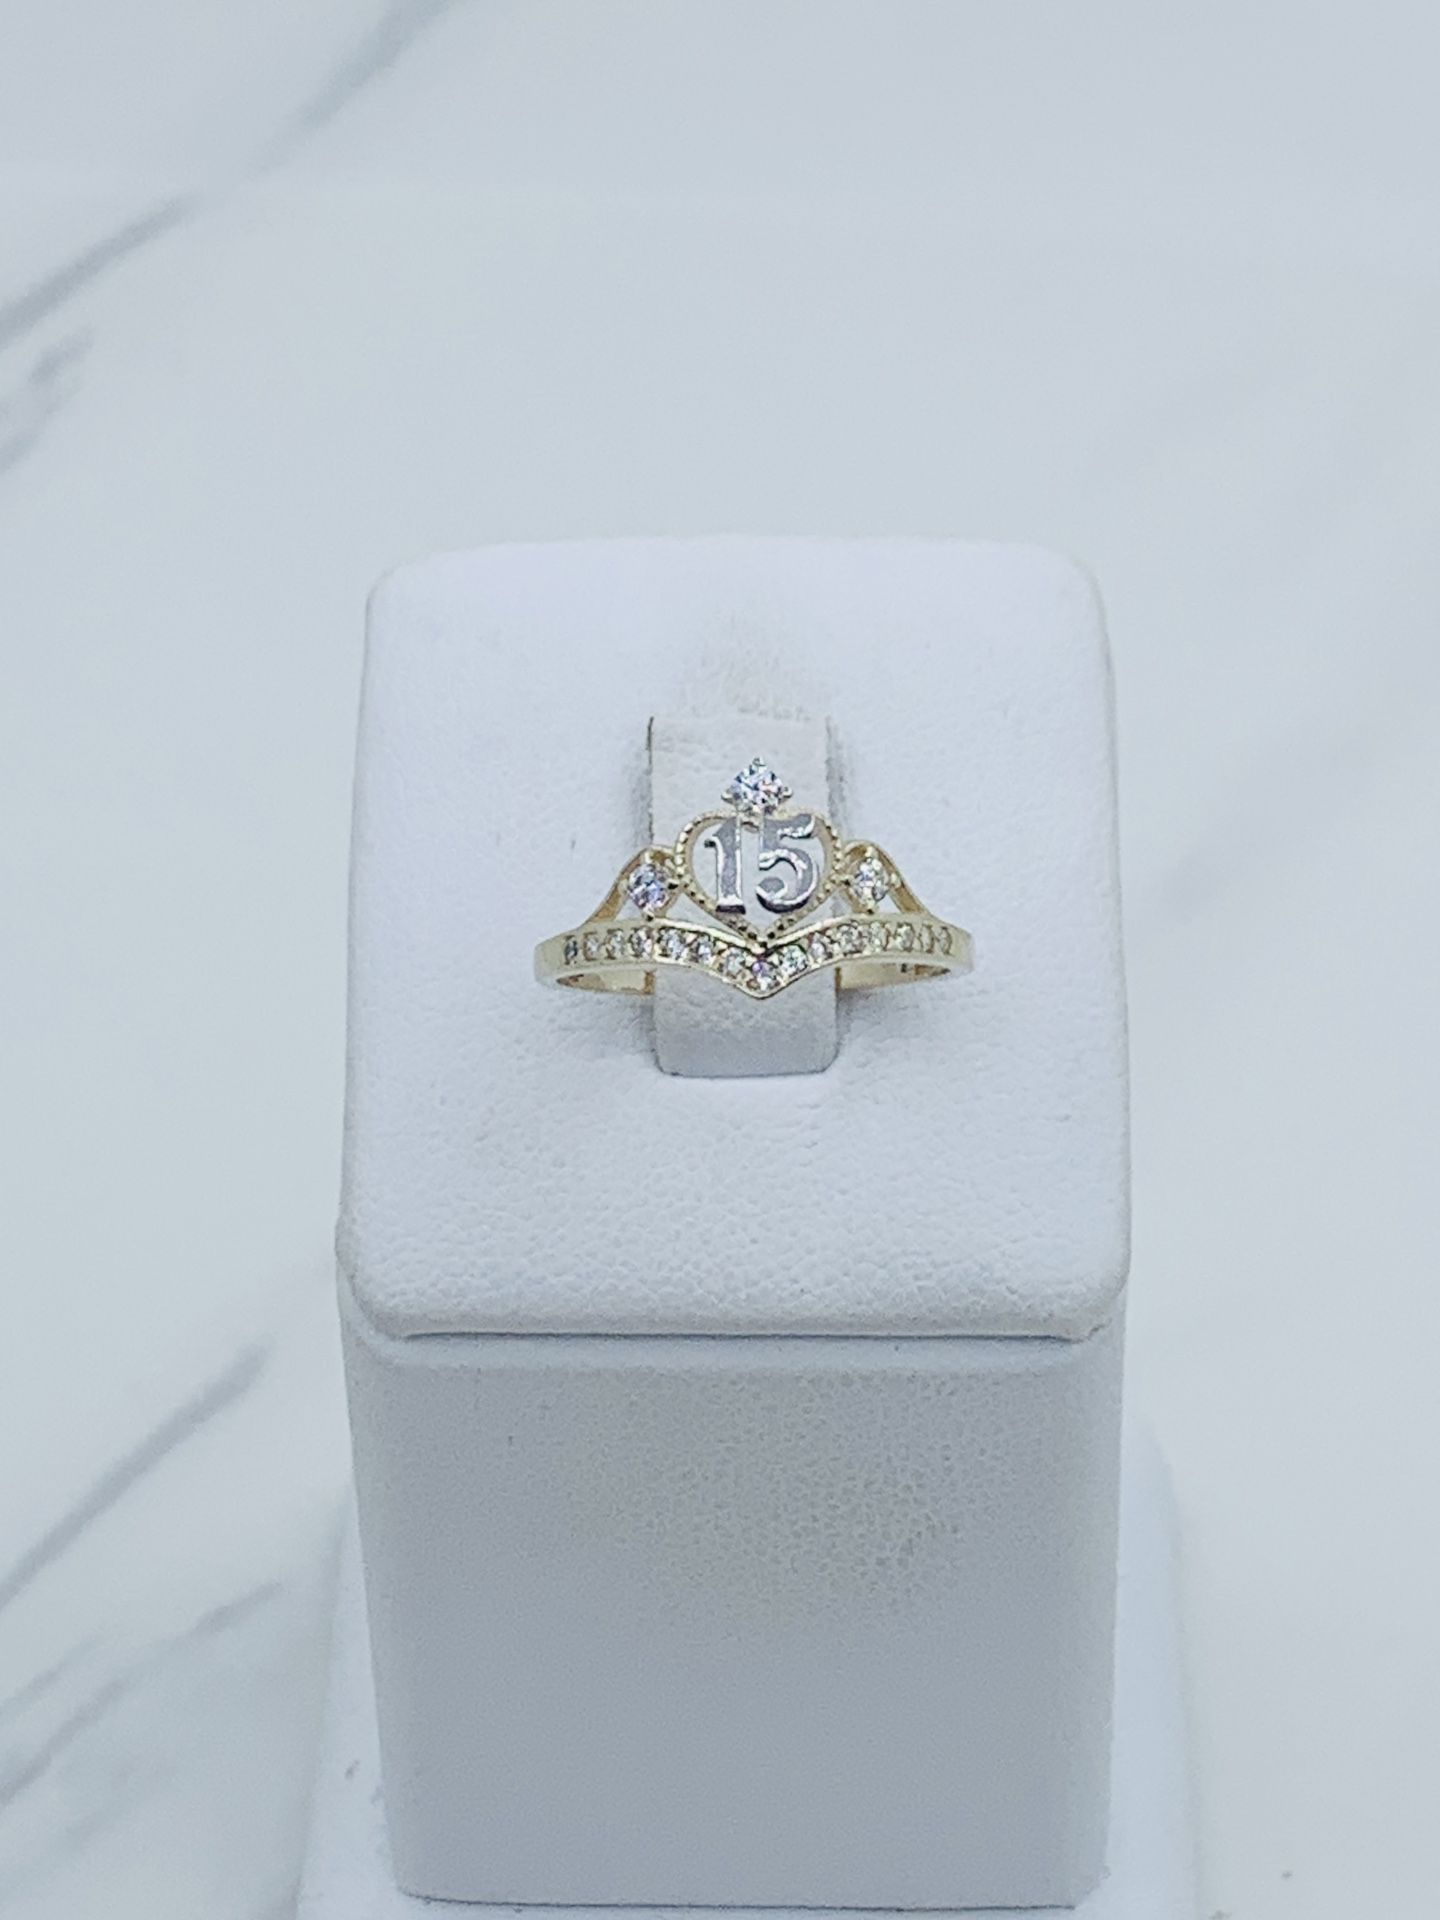 10k Gold Ring Sweet 15 Crown Tiara - Anillo En Oro De 10k Corona 